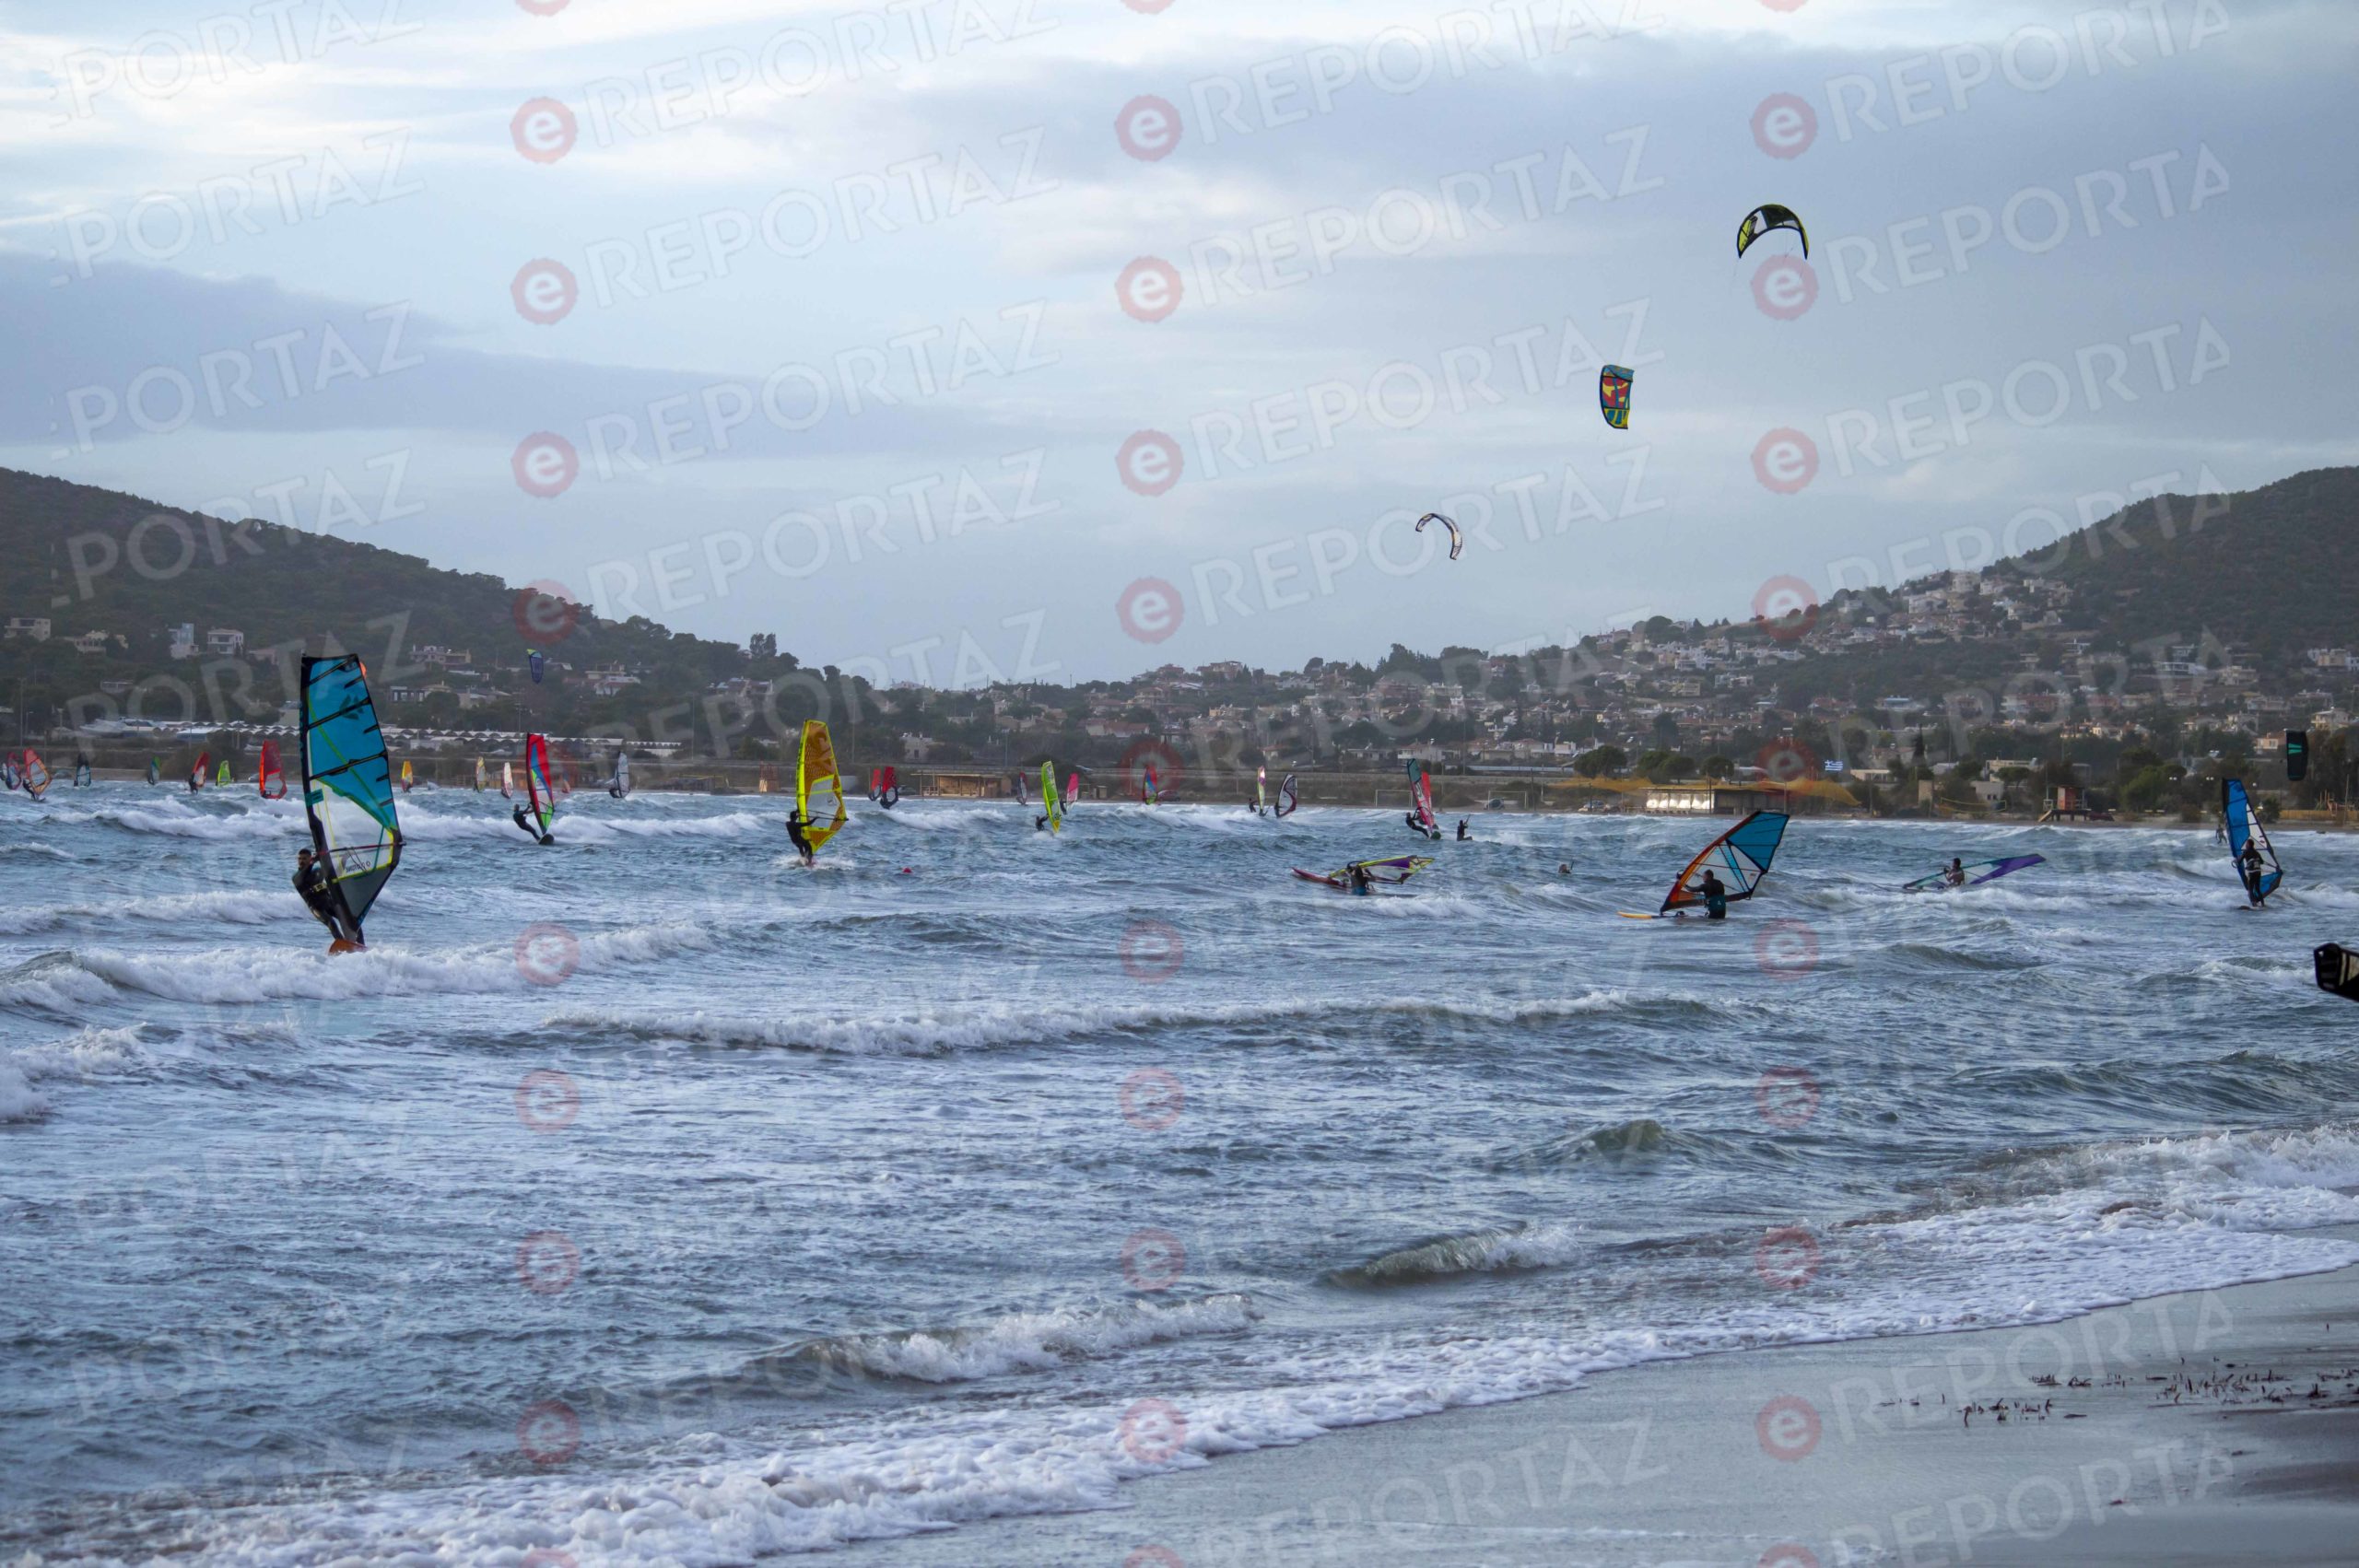 Ανάβυσσος: "Κοσμοπλημμύρα" από φίλους του windsurfing σήμερα εν μέσω καραντίνας - Το γεωγραφικό… κενό στην ατομική άθληση!